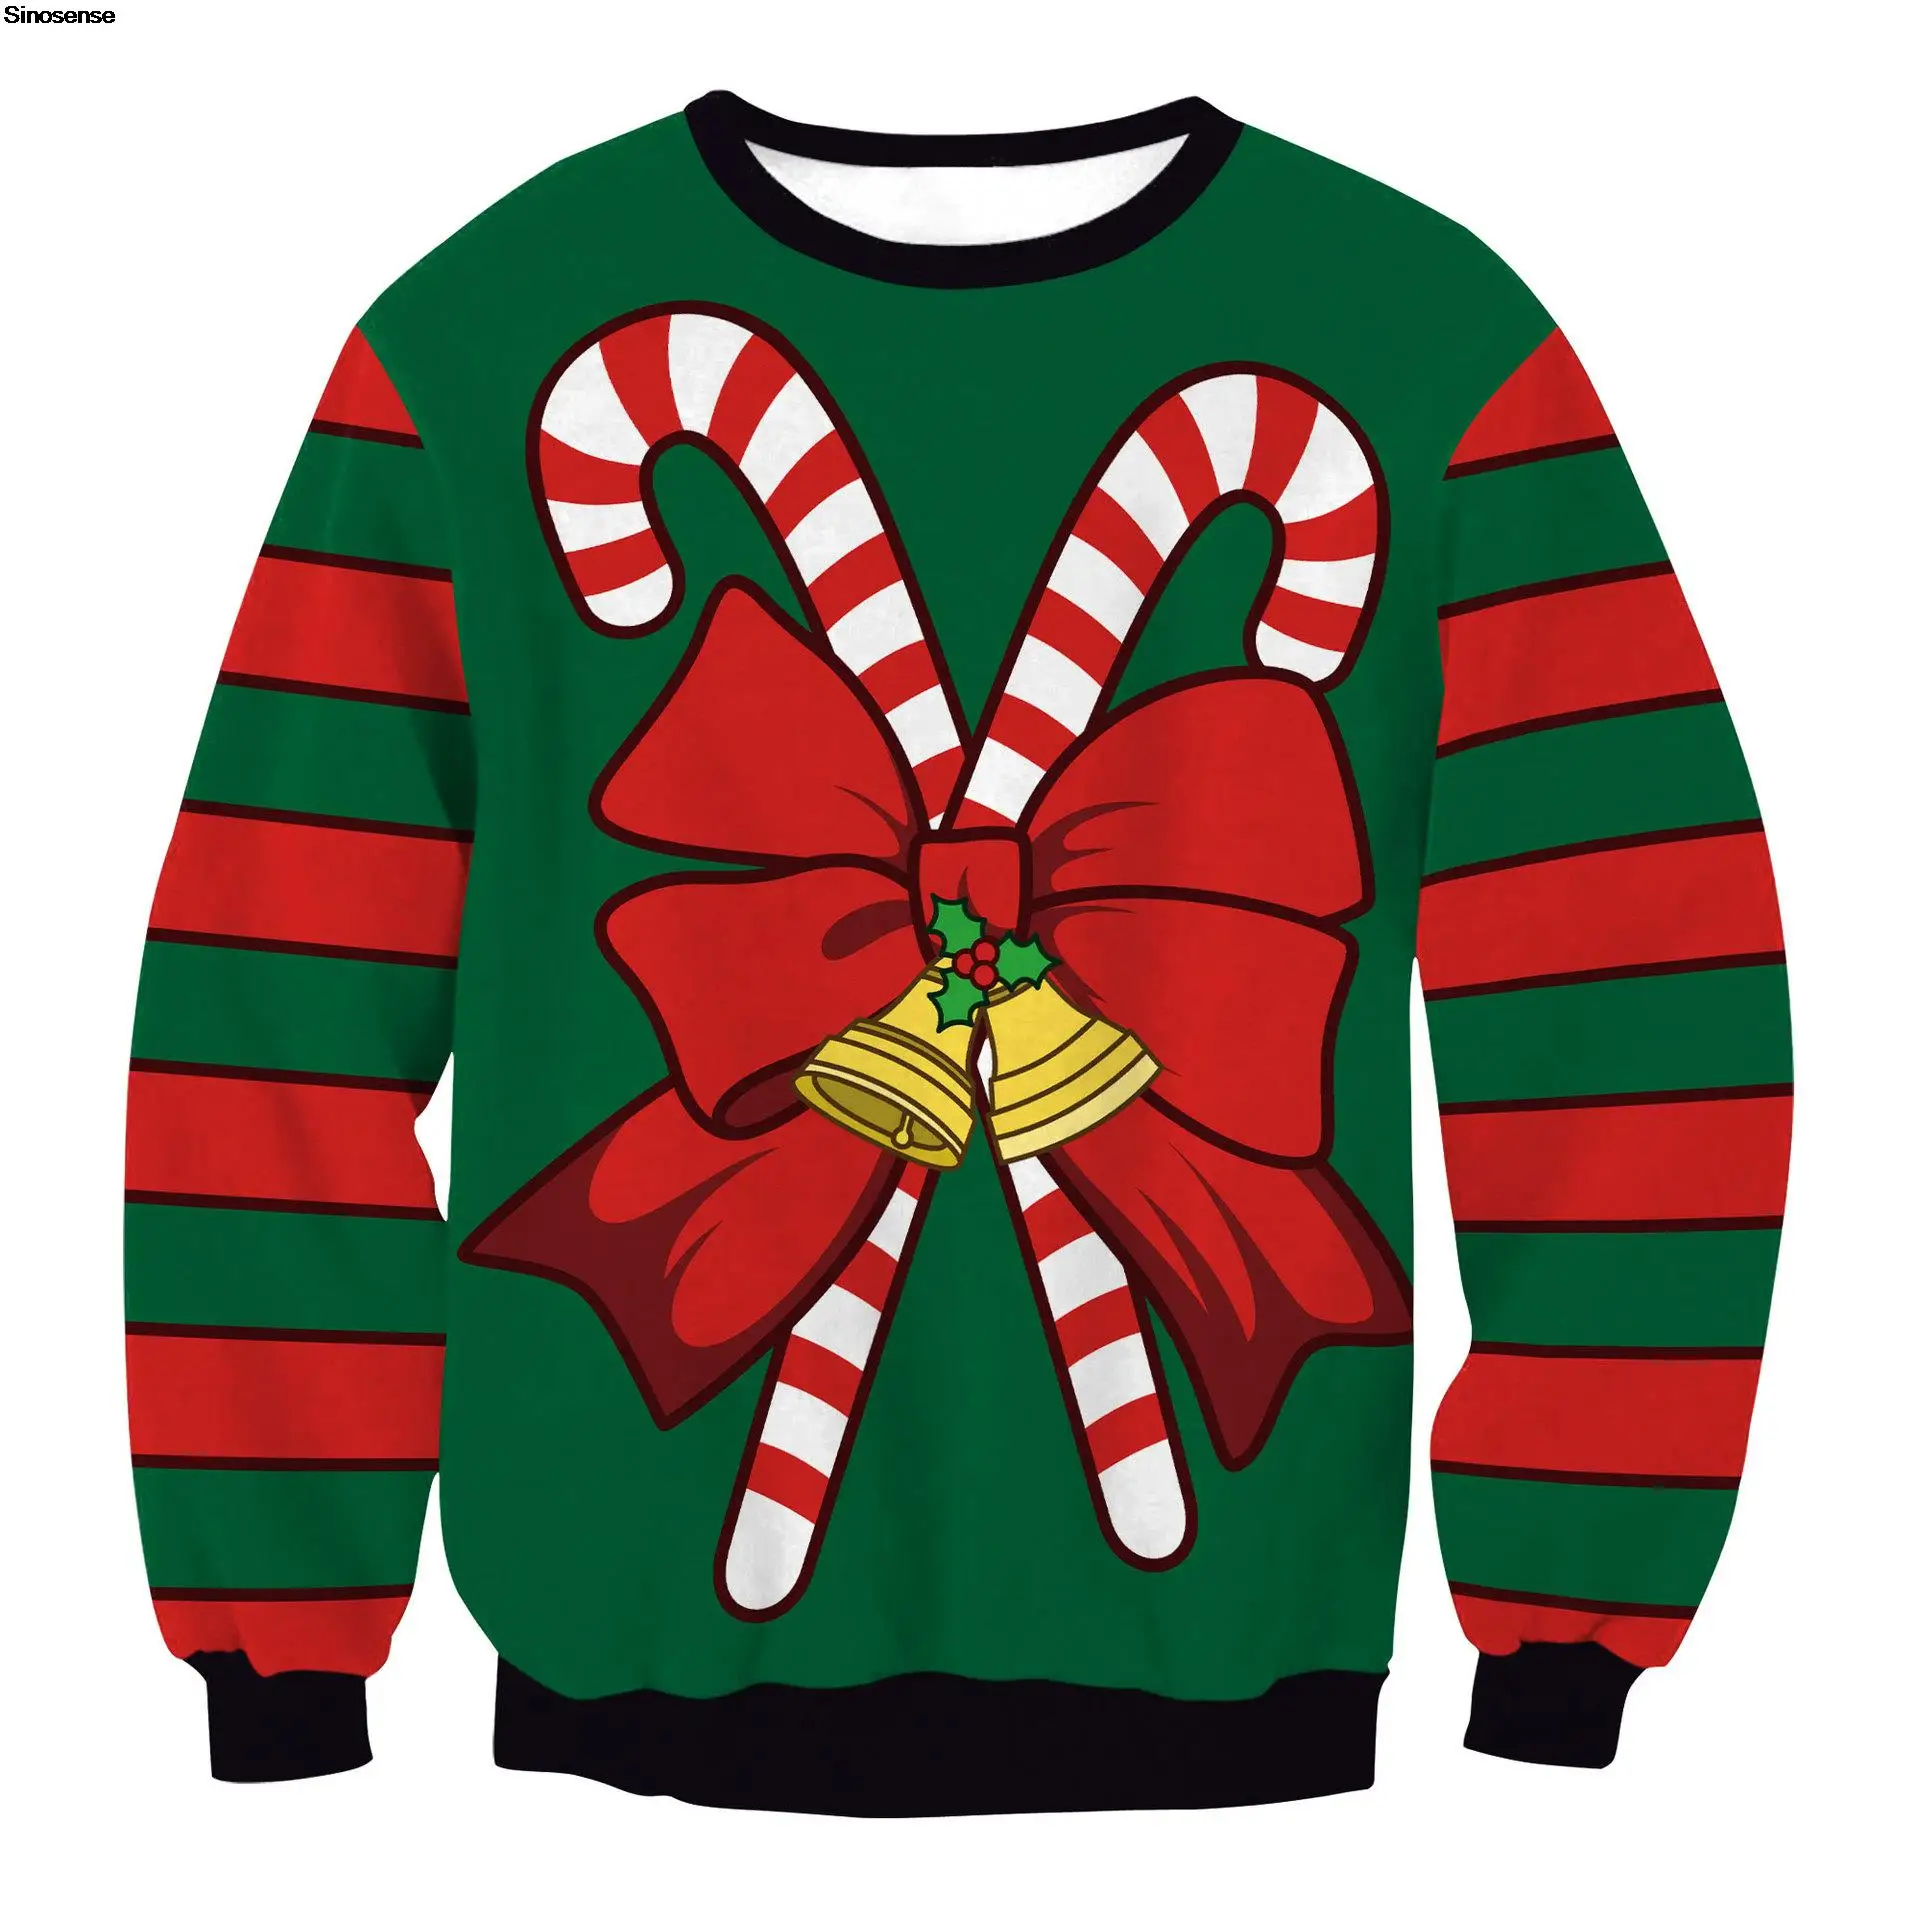 

Свитер для мужчин и женщин на Новый год и Рождество, свитер с 3D забавным принтом на осень и зиму, Рождественский пуловер, праздничный трикотажный джемпер, топы